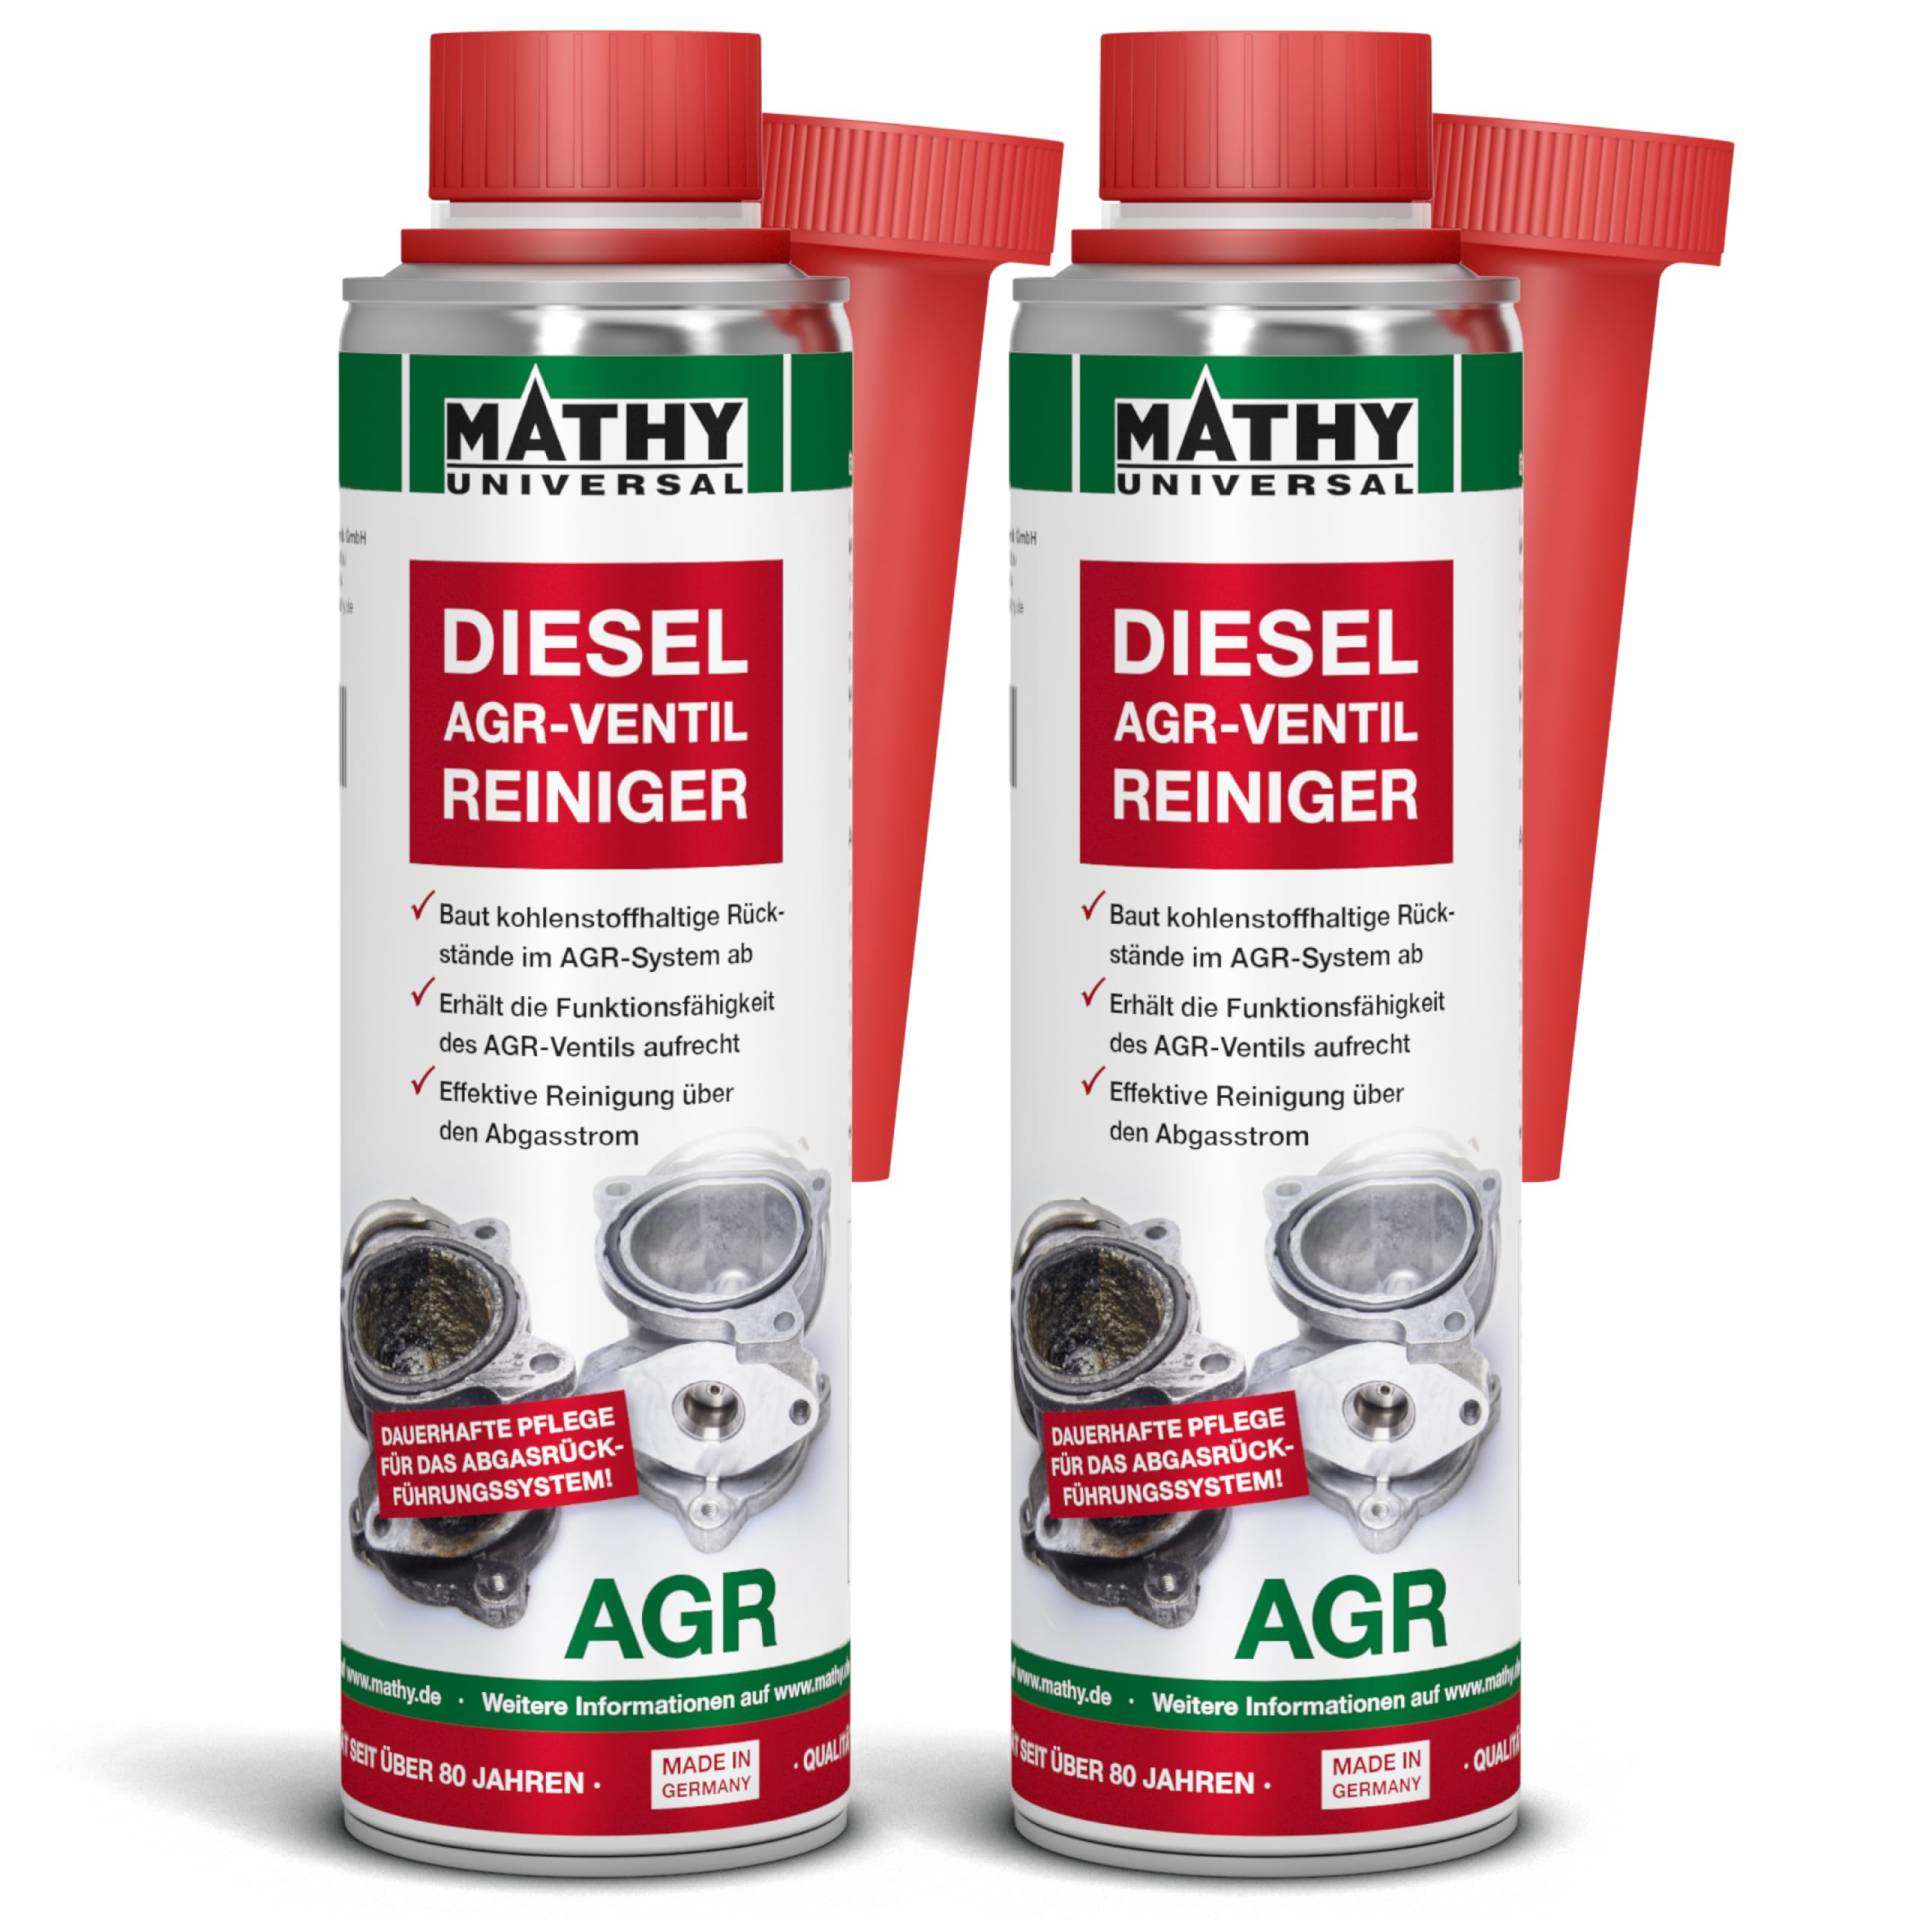 MATHY-AGR Reiniger Diesel - Diesel Systemreiniger für Dieselmotoren mit Abgasrückführungsventil - AGR-Ventil Reiniger - Diesel Additiv, 2 x 300 ml von MATHY